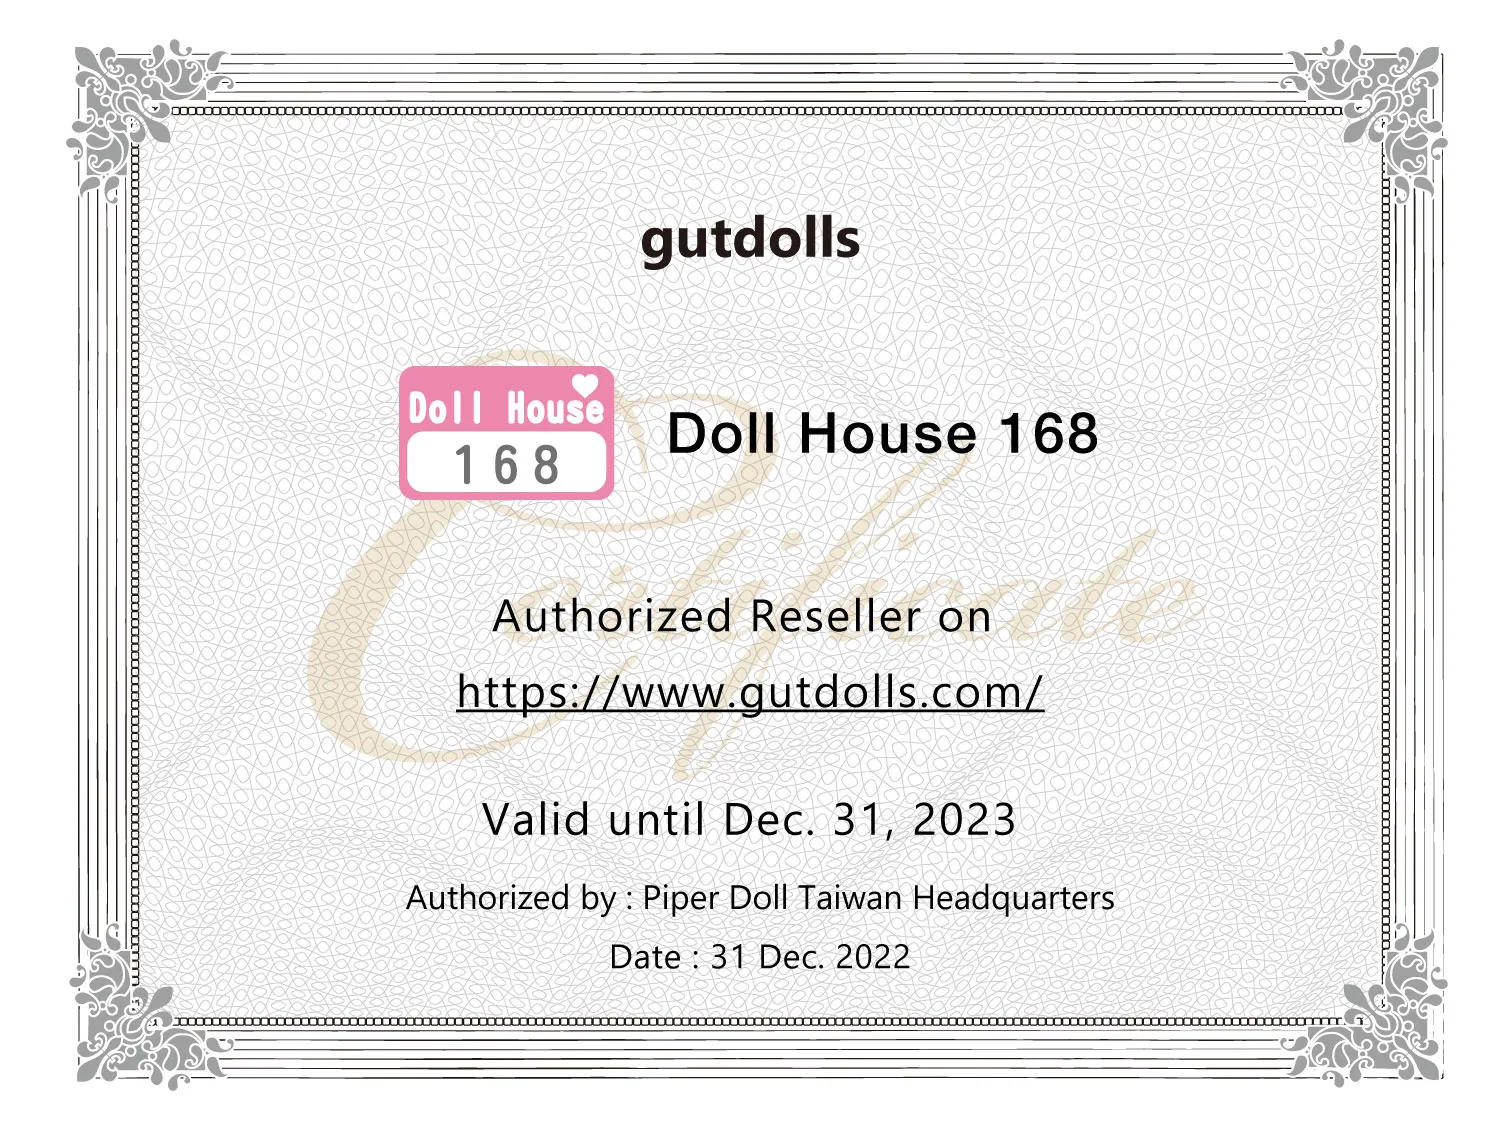 dollhouse168 doll